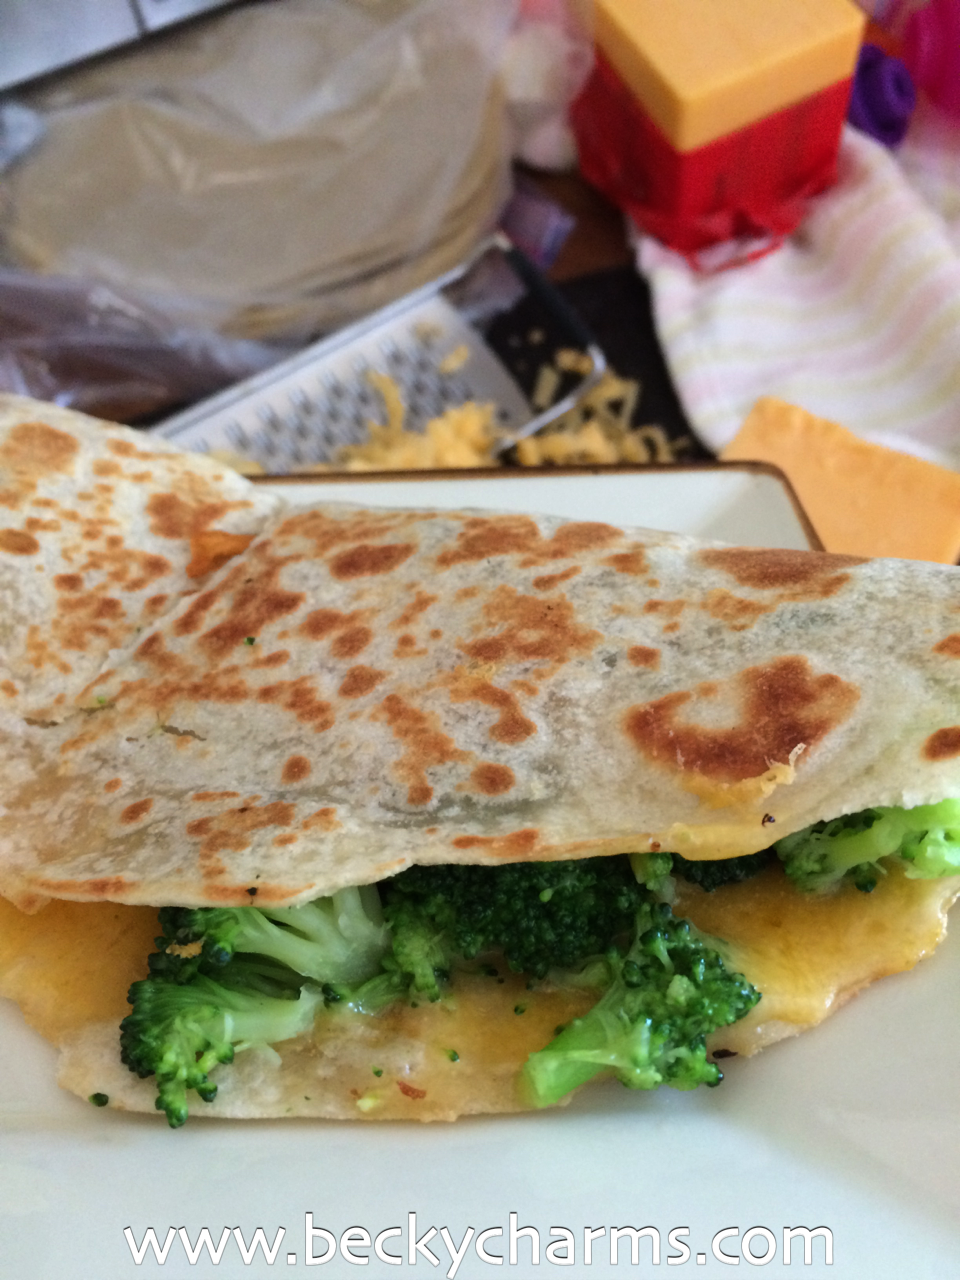 Cheddar Broccoli Vegetarian Quesadilla : The Fancy Quesadilla Series by BeckyCharms